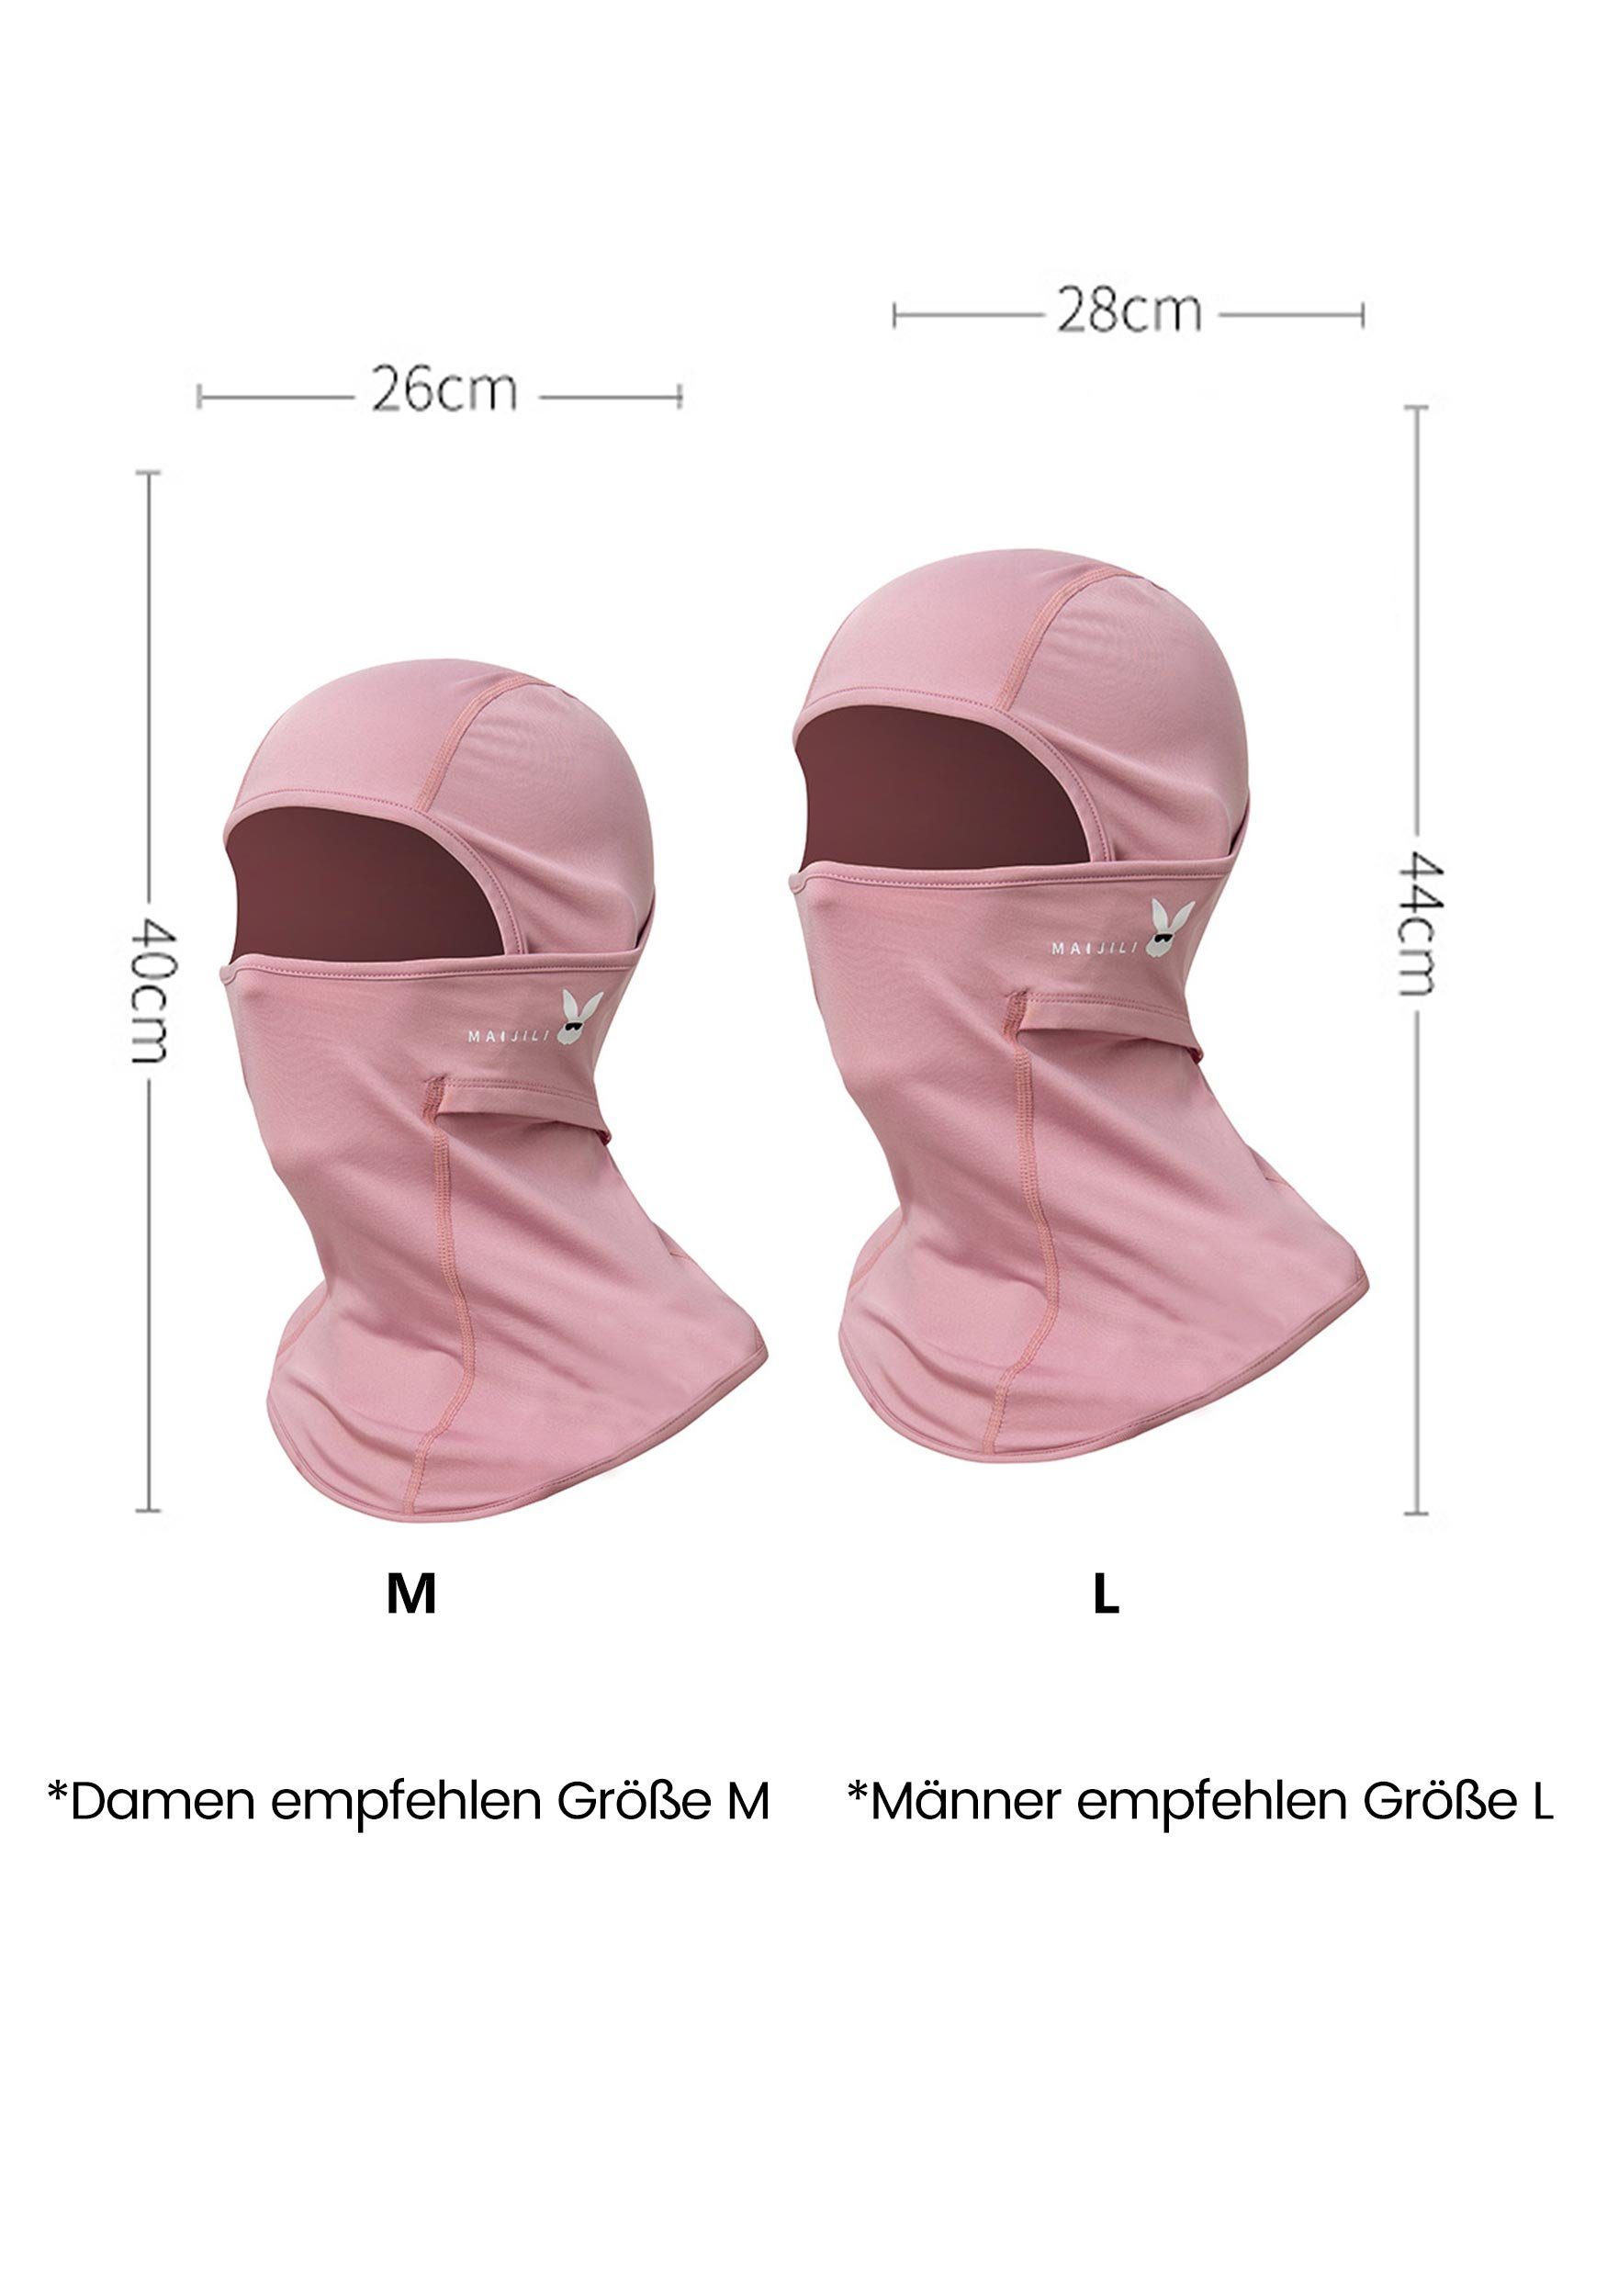 UV-Strahlen Schutz für Widersteht Rosa Sturmhaube Umfassenden MAGICSHE Skimaske